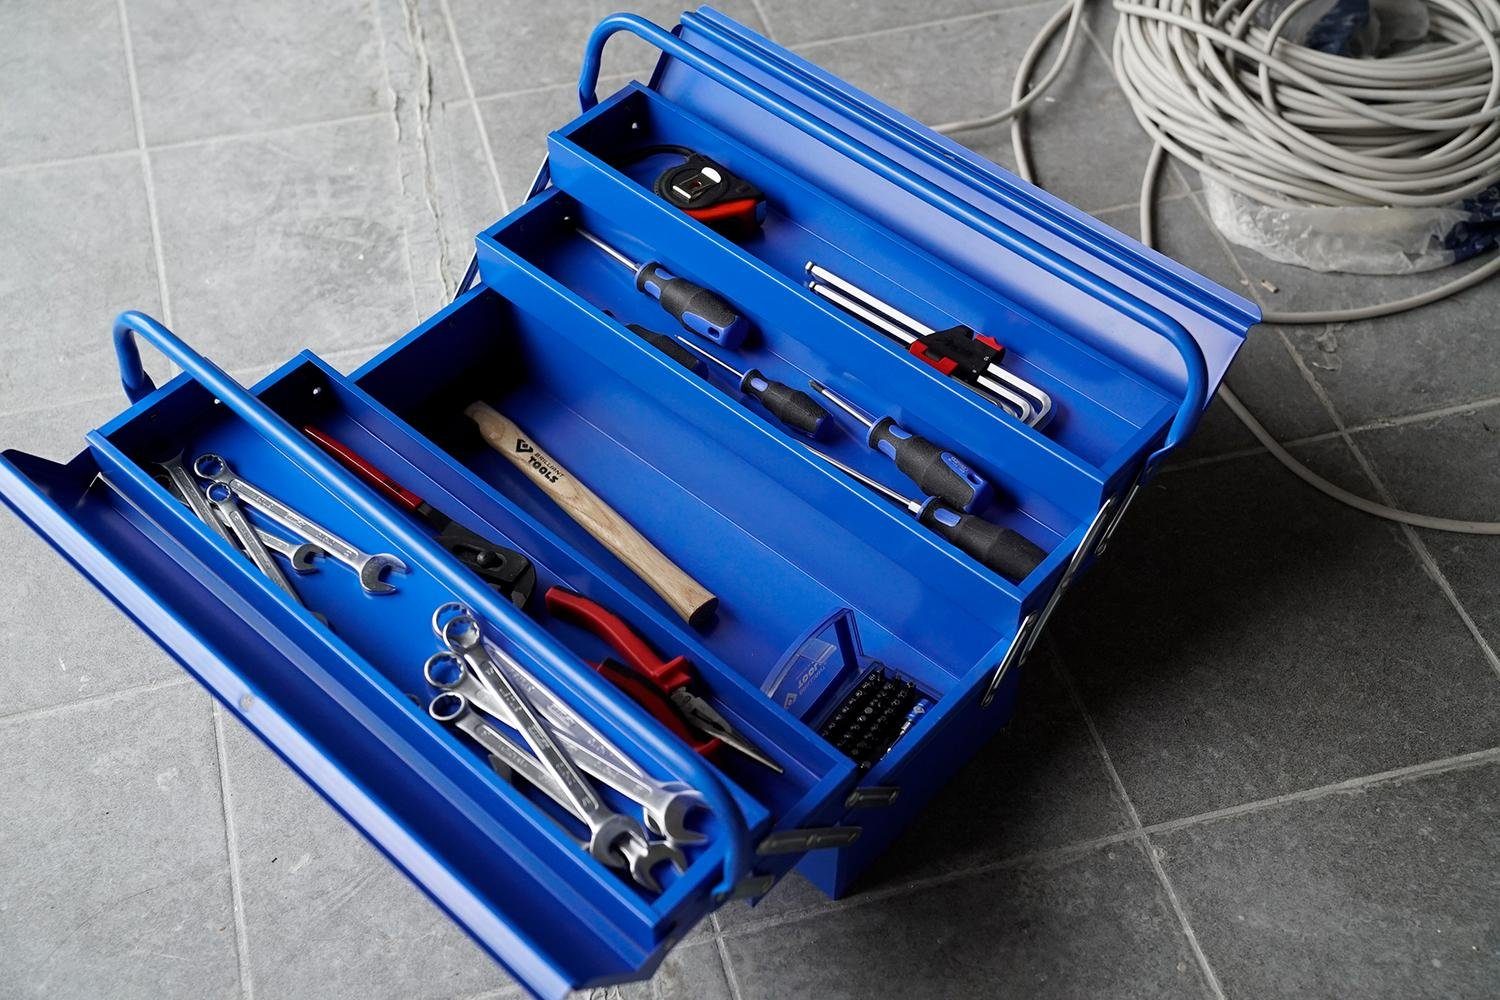 Tools Metall-Werkzeugkasten, klappbar Brilliant Werkzeugkoffer